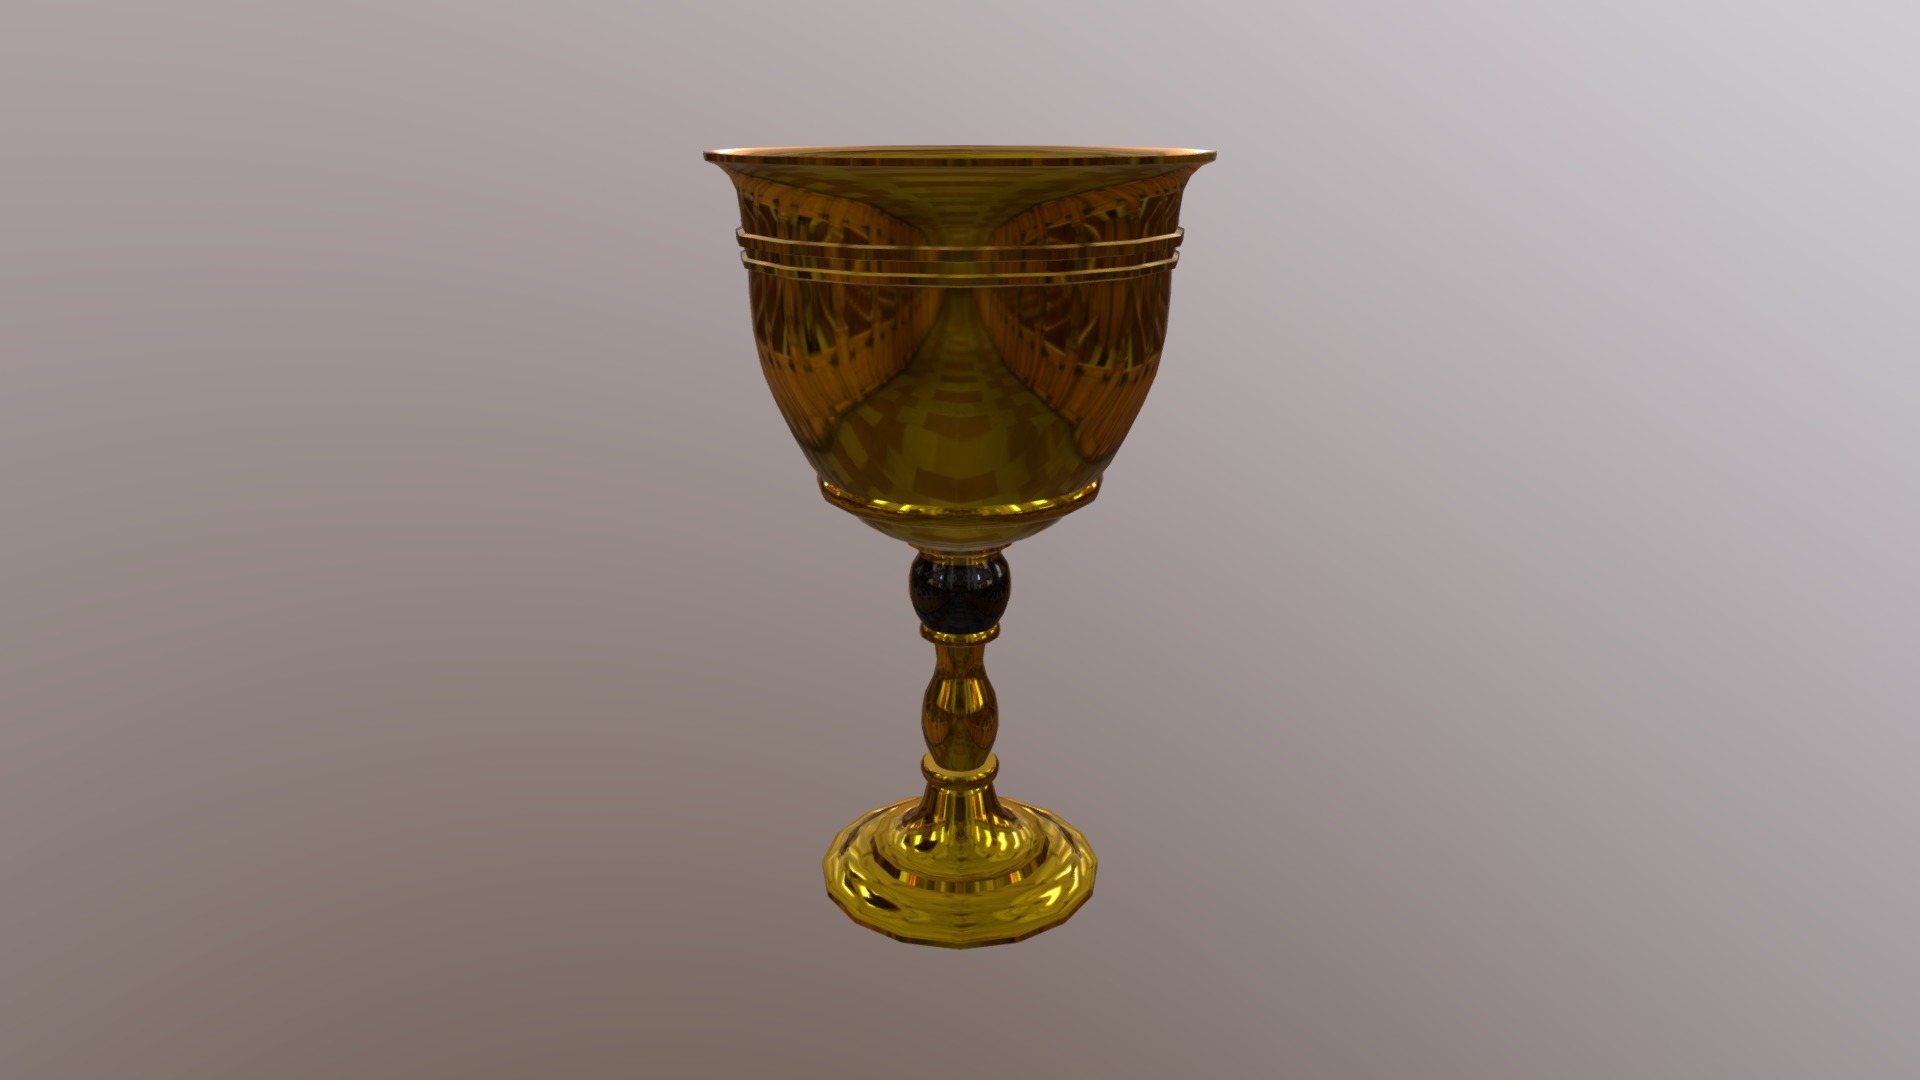 Golden Cup - 3D model by Jonny.Willian 3d model